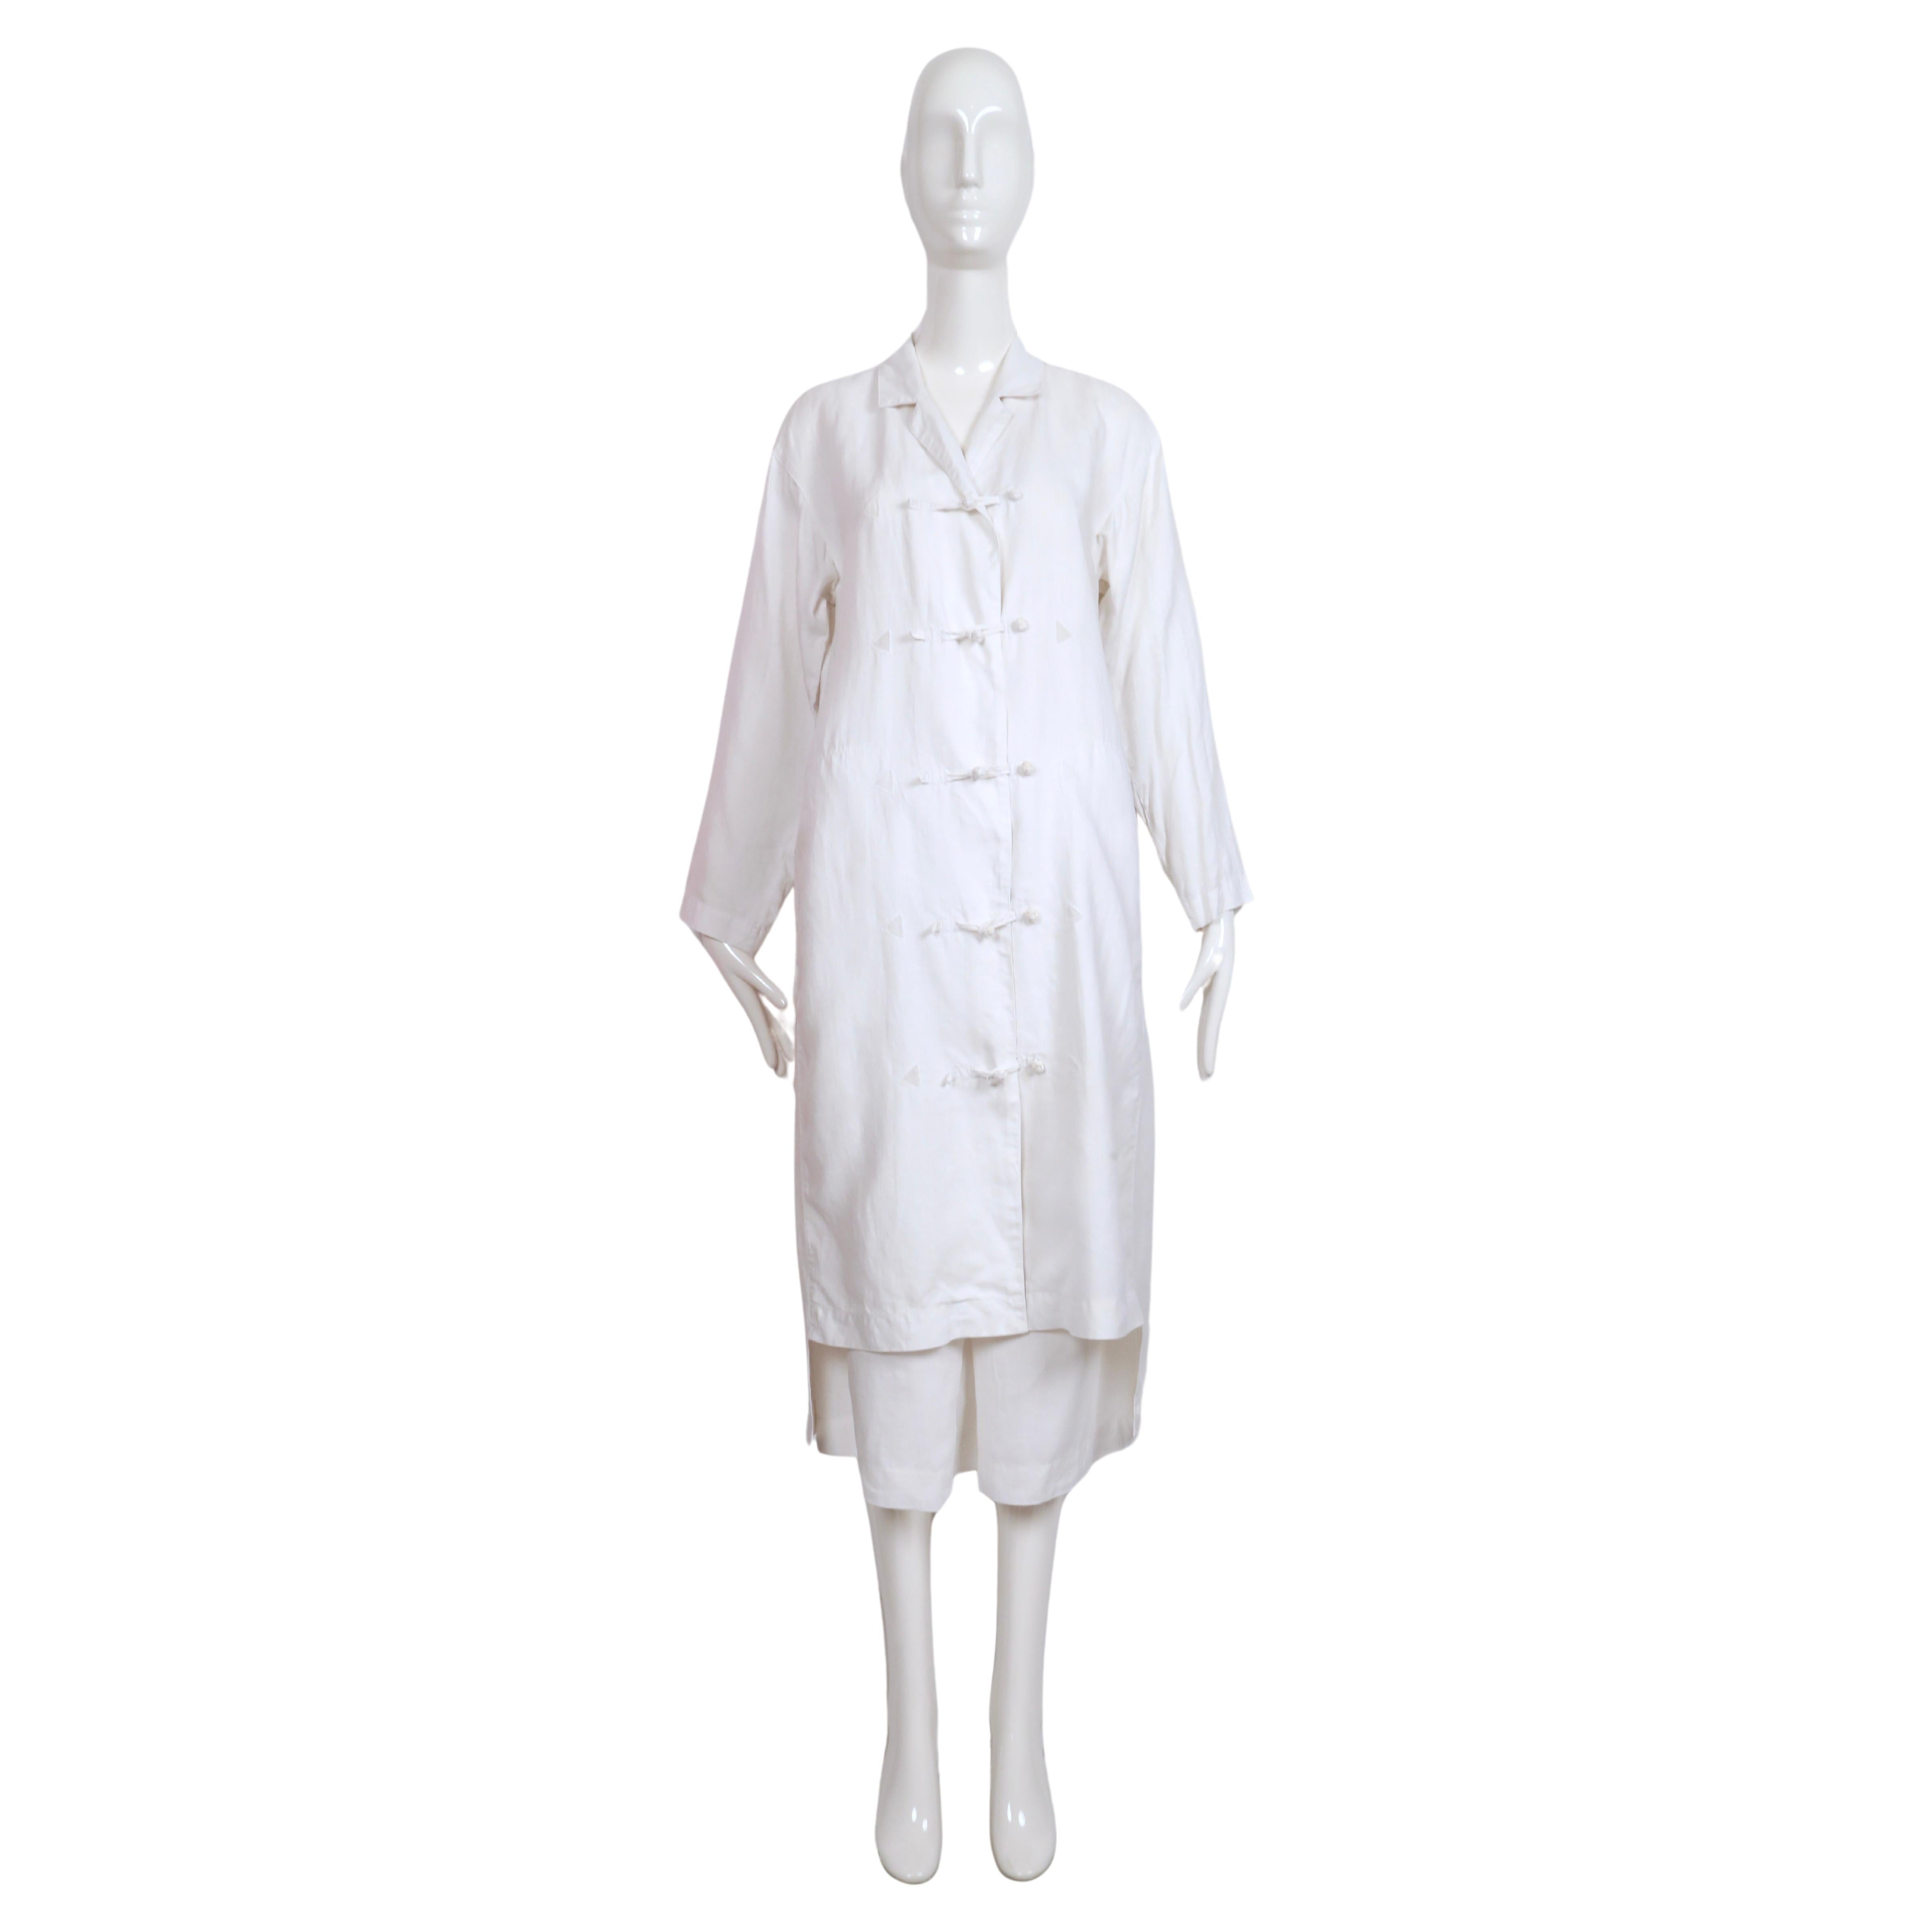 Superbe veste et jupe assorties en lin blanc avec fermeture à boutons noués et empiècements triangulaires transparents, conçues par Issey Miyake et datant des années 1980. La veste présente une coupe unique au niveau de l'ourlet qui laisse